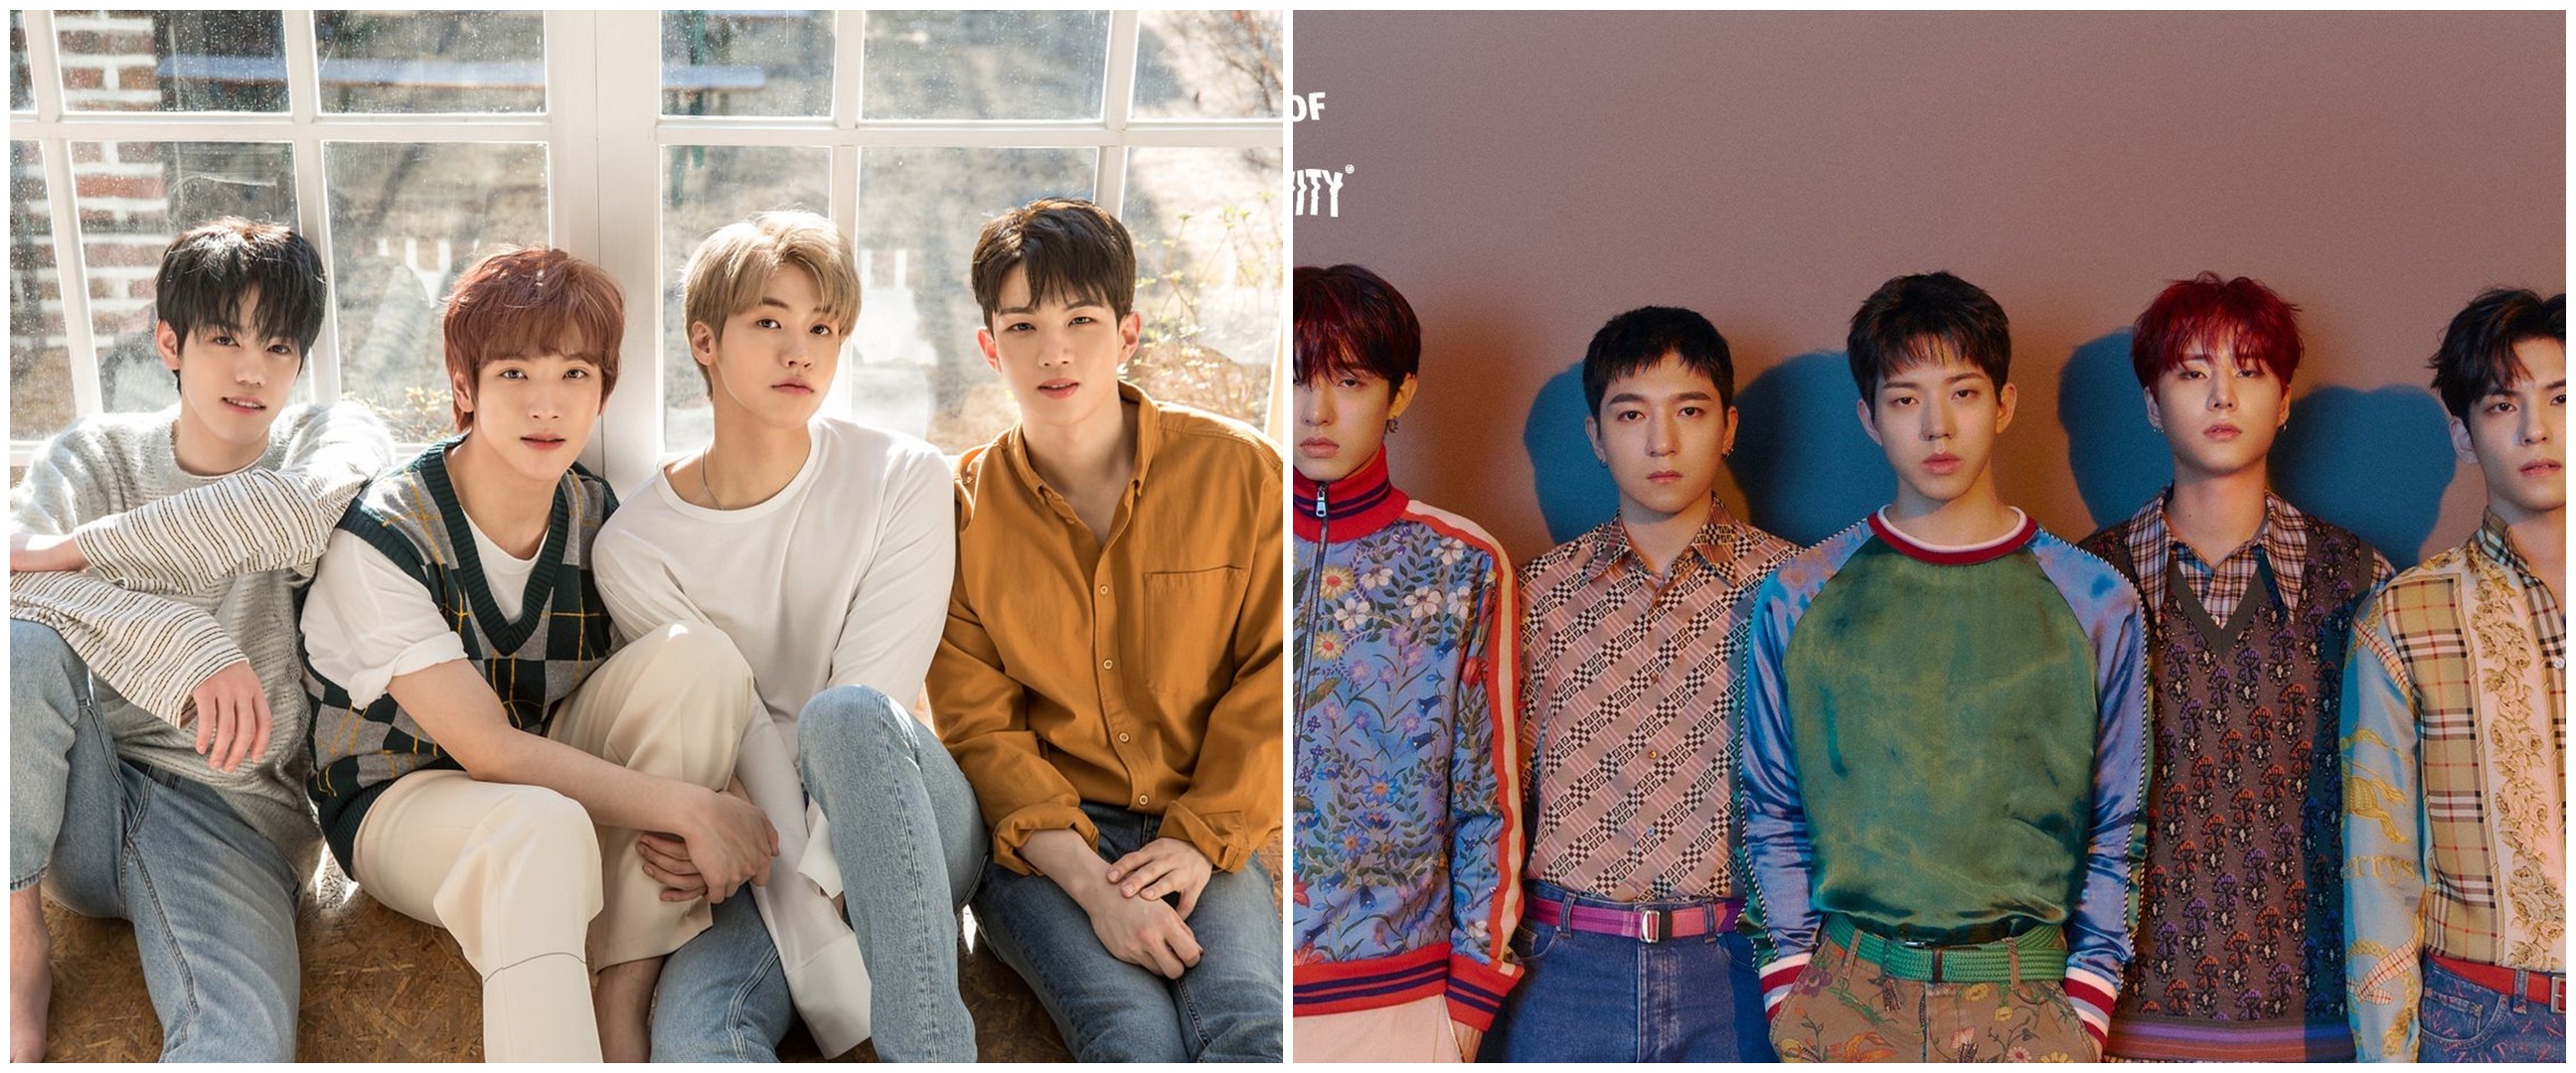 Tak cuma idol K-Pop, ini 5 band Korea yang sudah mendunia